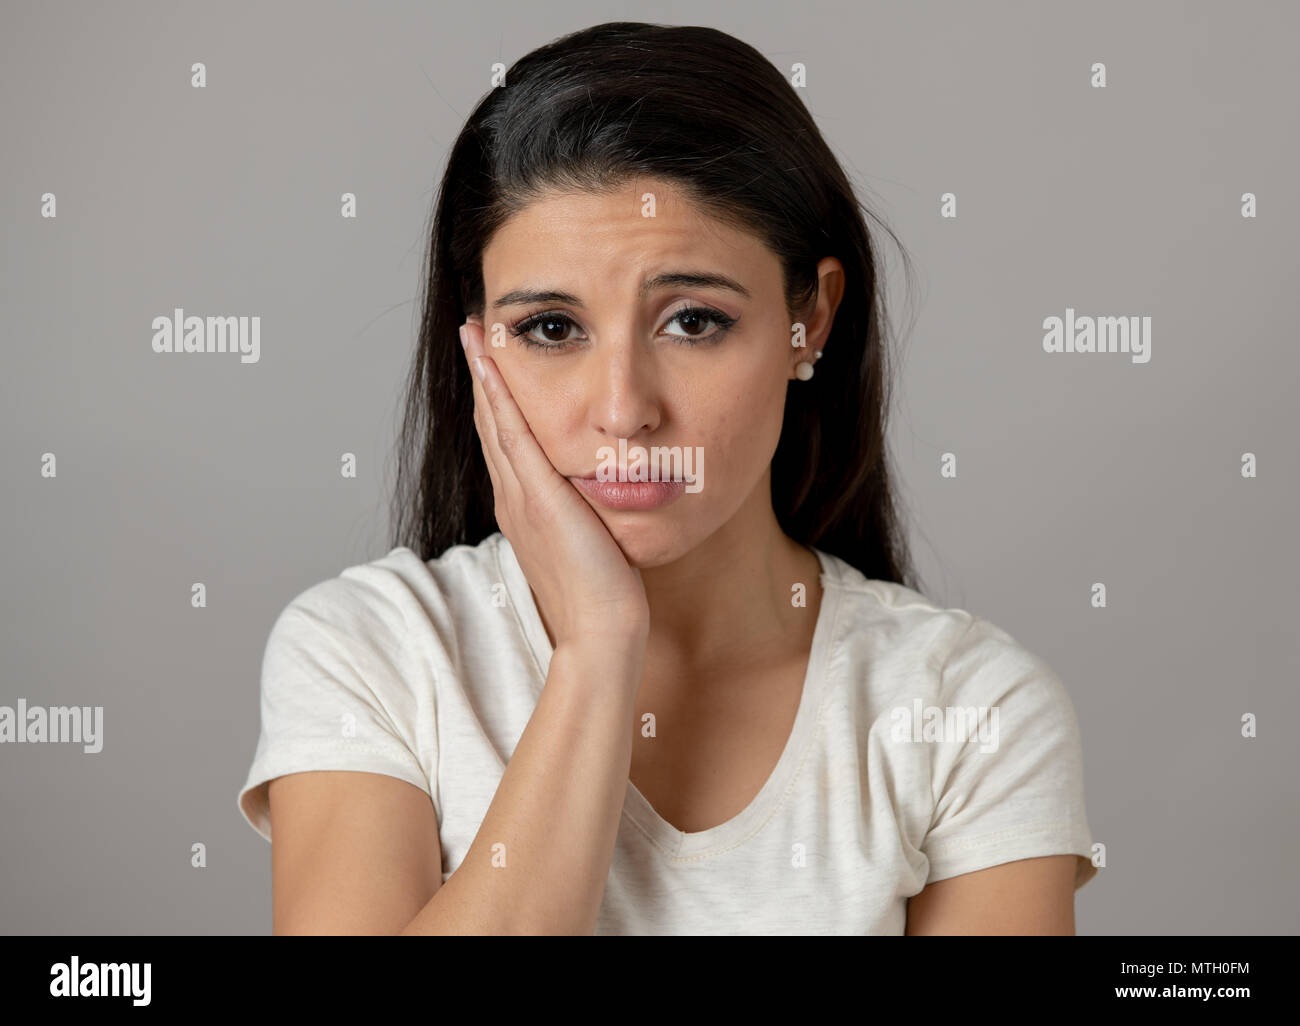 Nahaufnahme, Porträt einer schönen jungen latin Hispanic Frau mit einem traurigen Gesicht. Suchen miserabel, Melancholie und deprimiert. Menschliche Mimik und Stockfoto